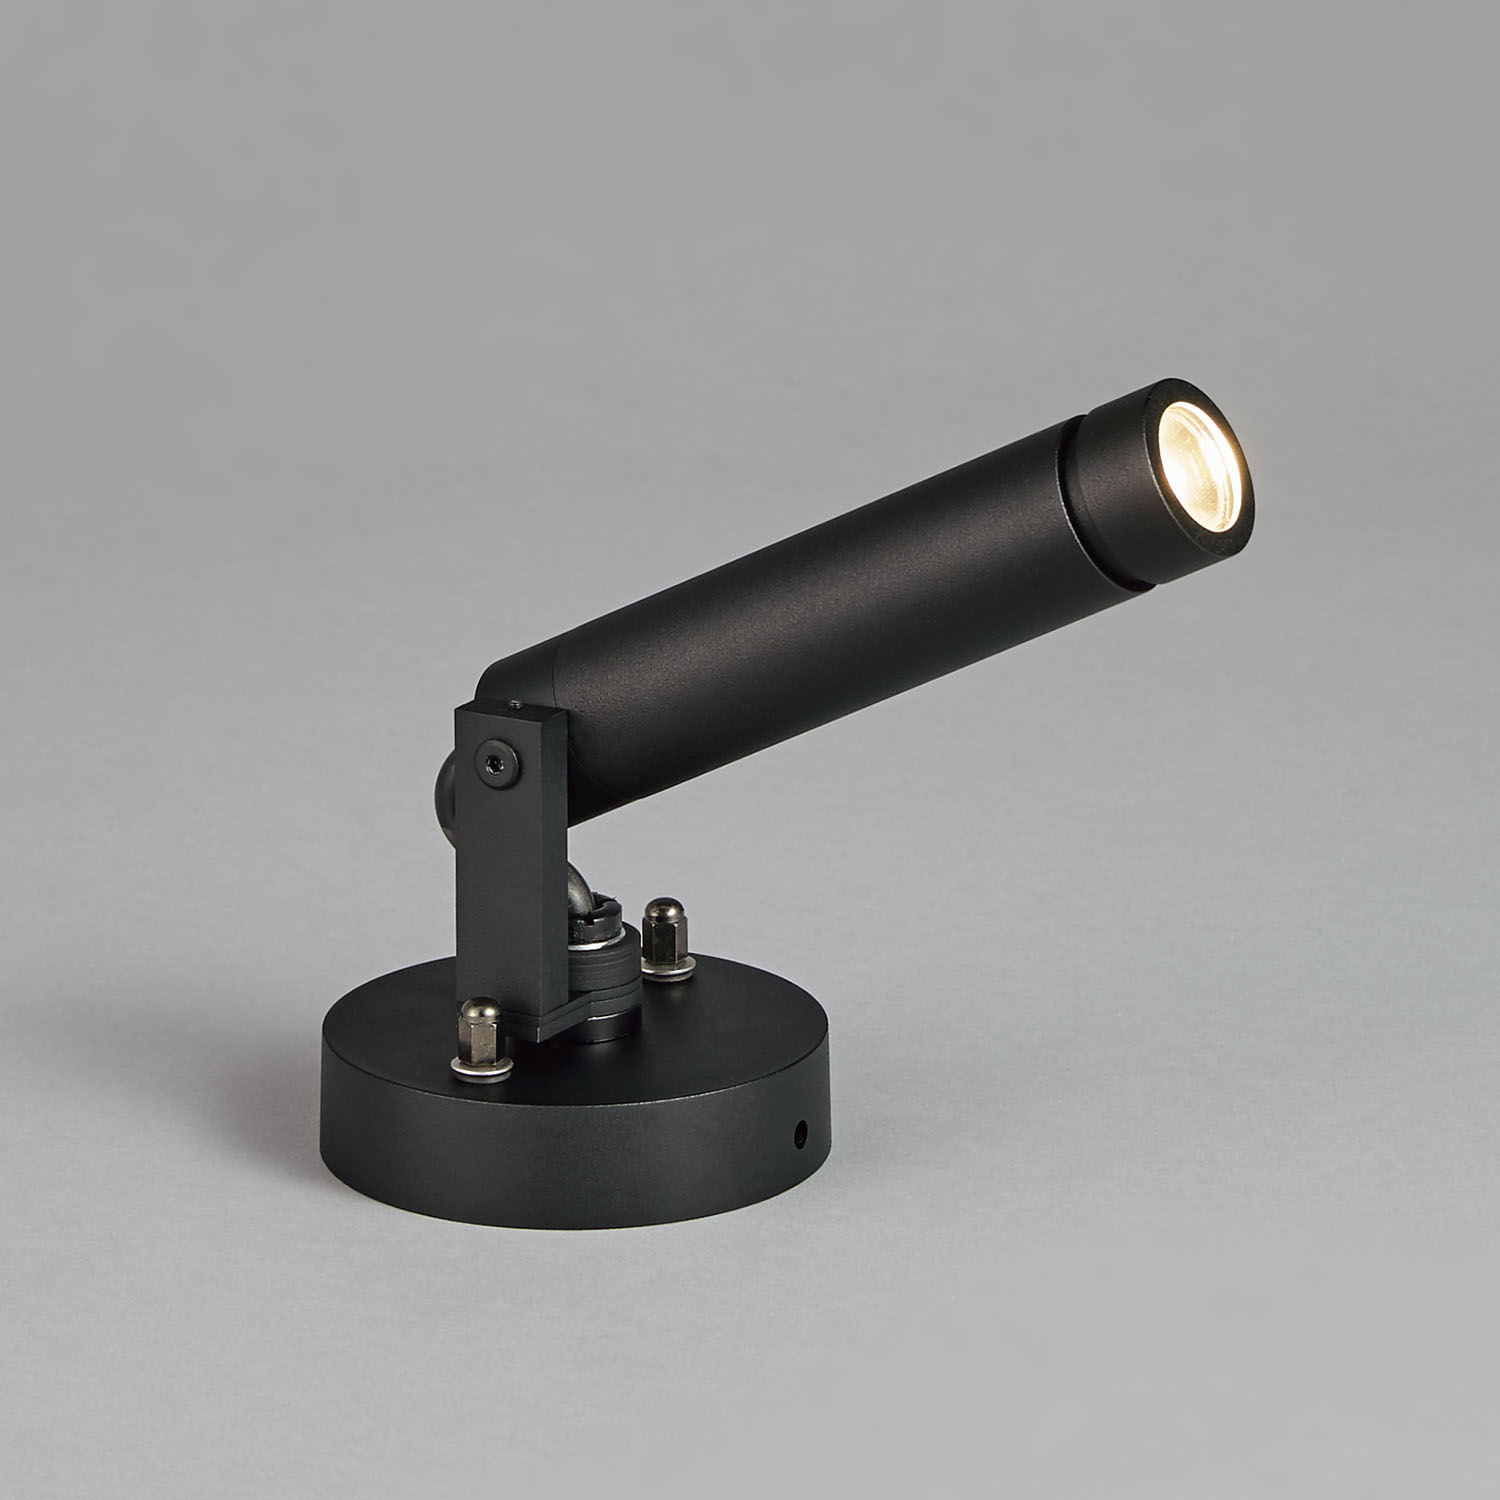 山田照明 山田照明 Compact Spot Neo（コンパクト・スポット・ネオ） 屋外用スポットライト 黒色 LED 電球色 調光 64度  AD-3146-N